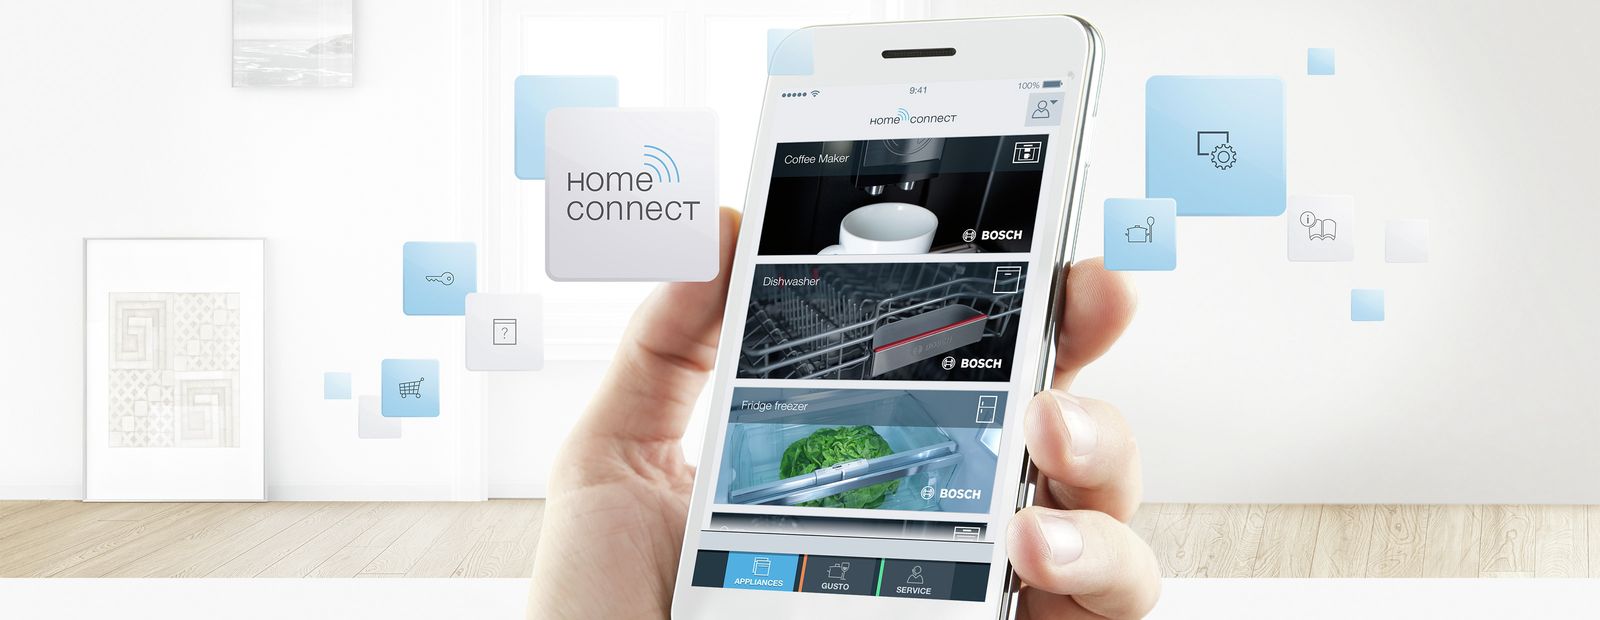 Home Connect – kết nối thông minh cho cuộc sống dễ dàng hơn – Osm Express